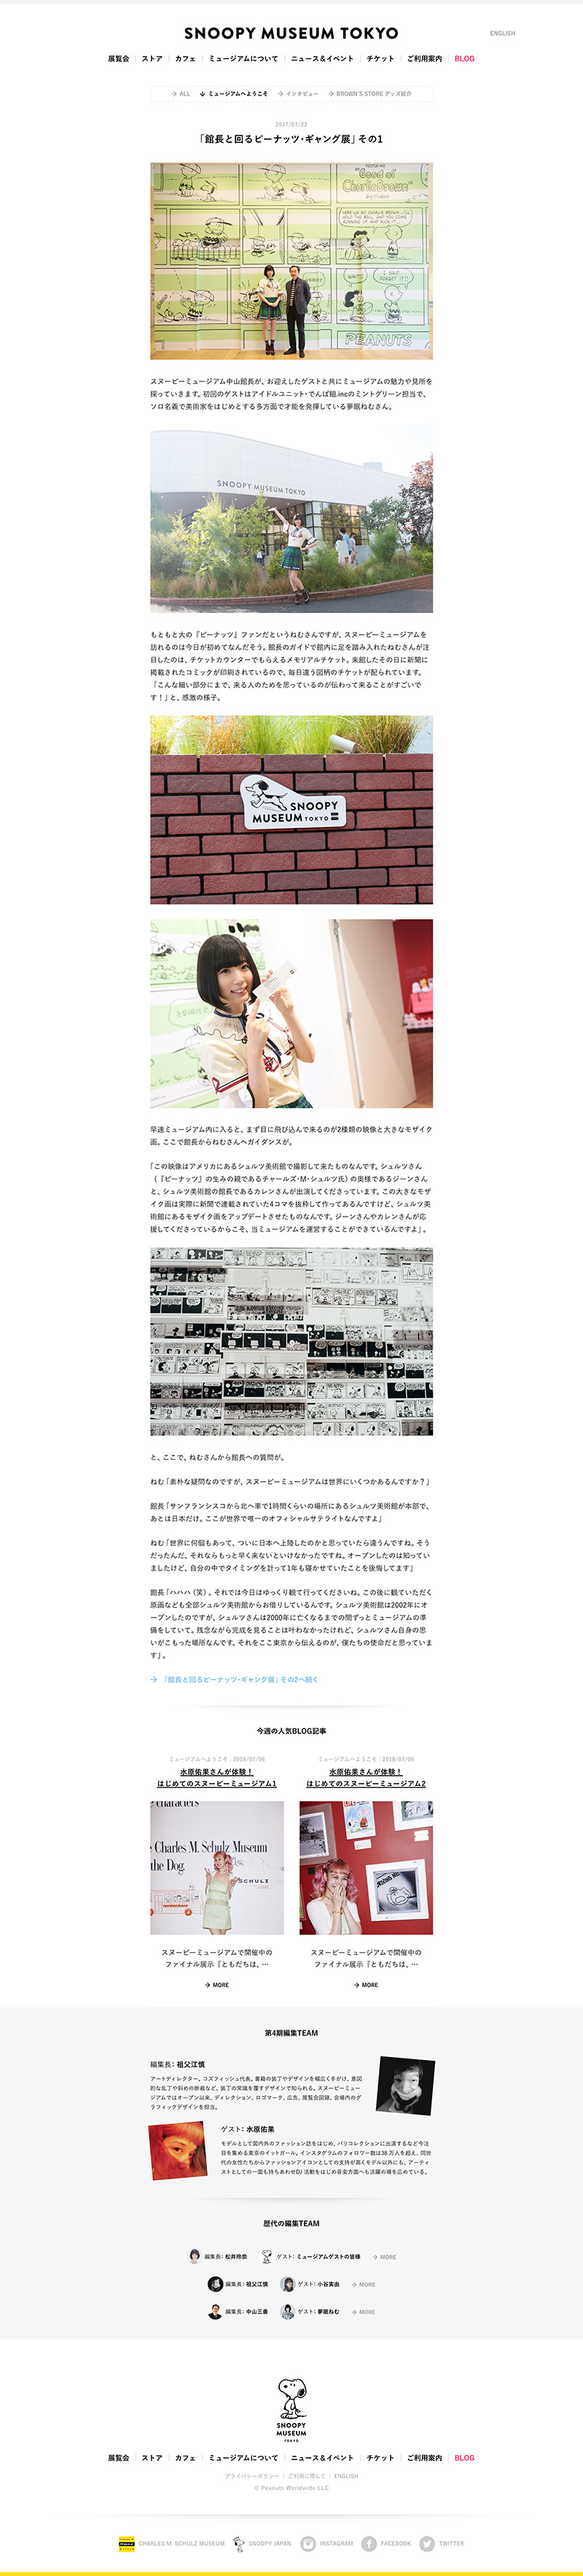 SNOOPY MUSEUM TOKYO 夢眠 ねむ（でんぱ組.inc）さんインタビューページ一部キャプチャー